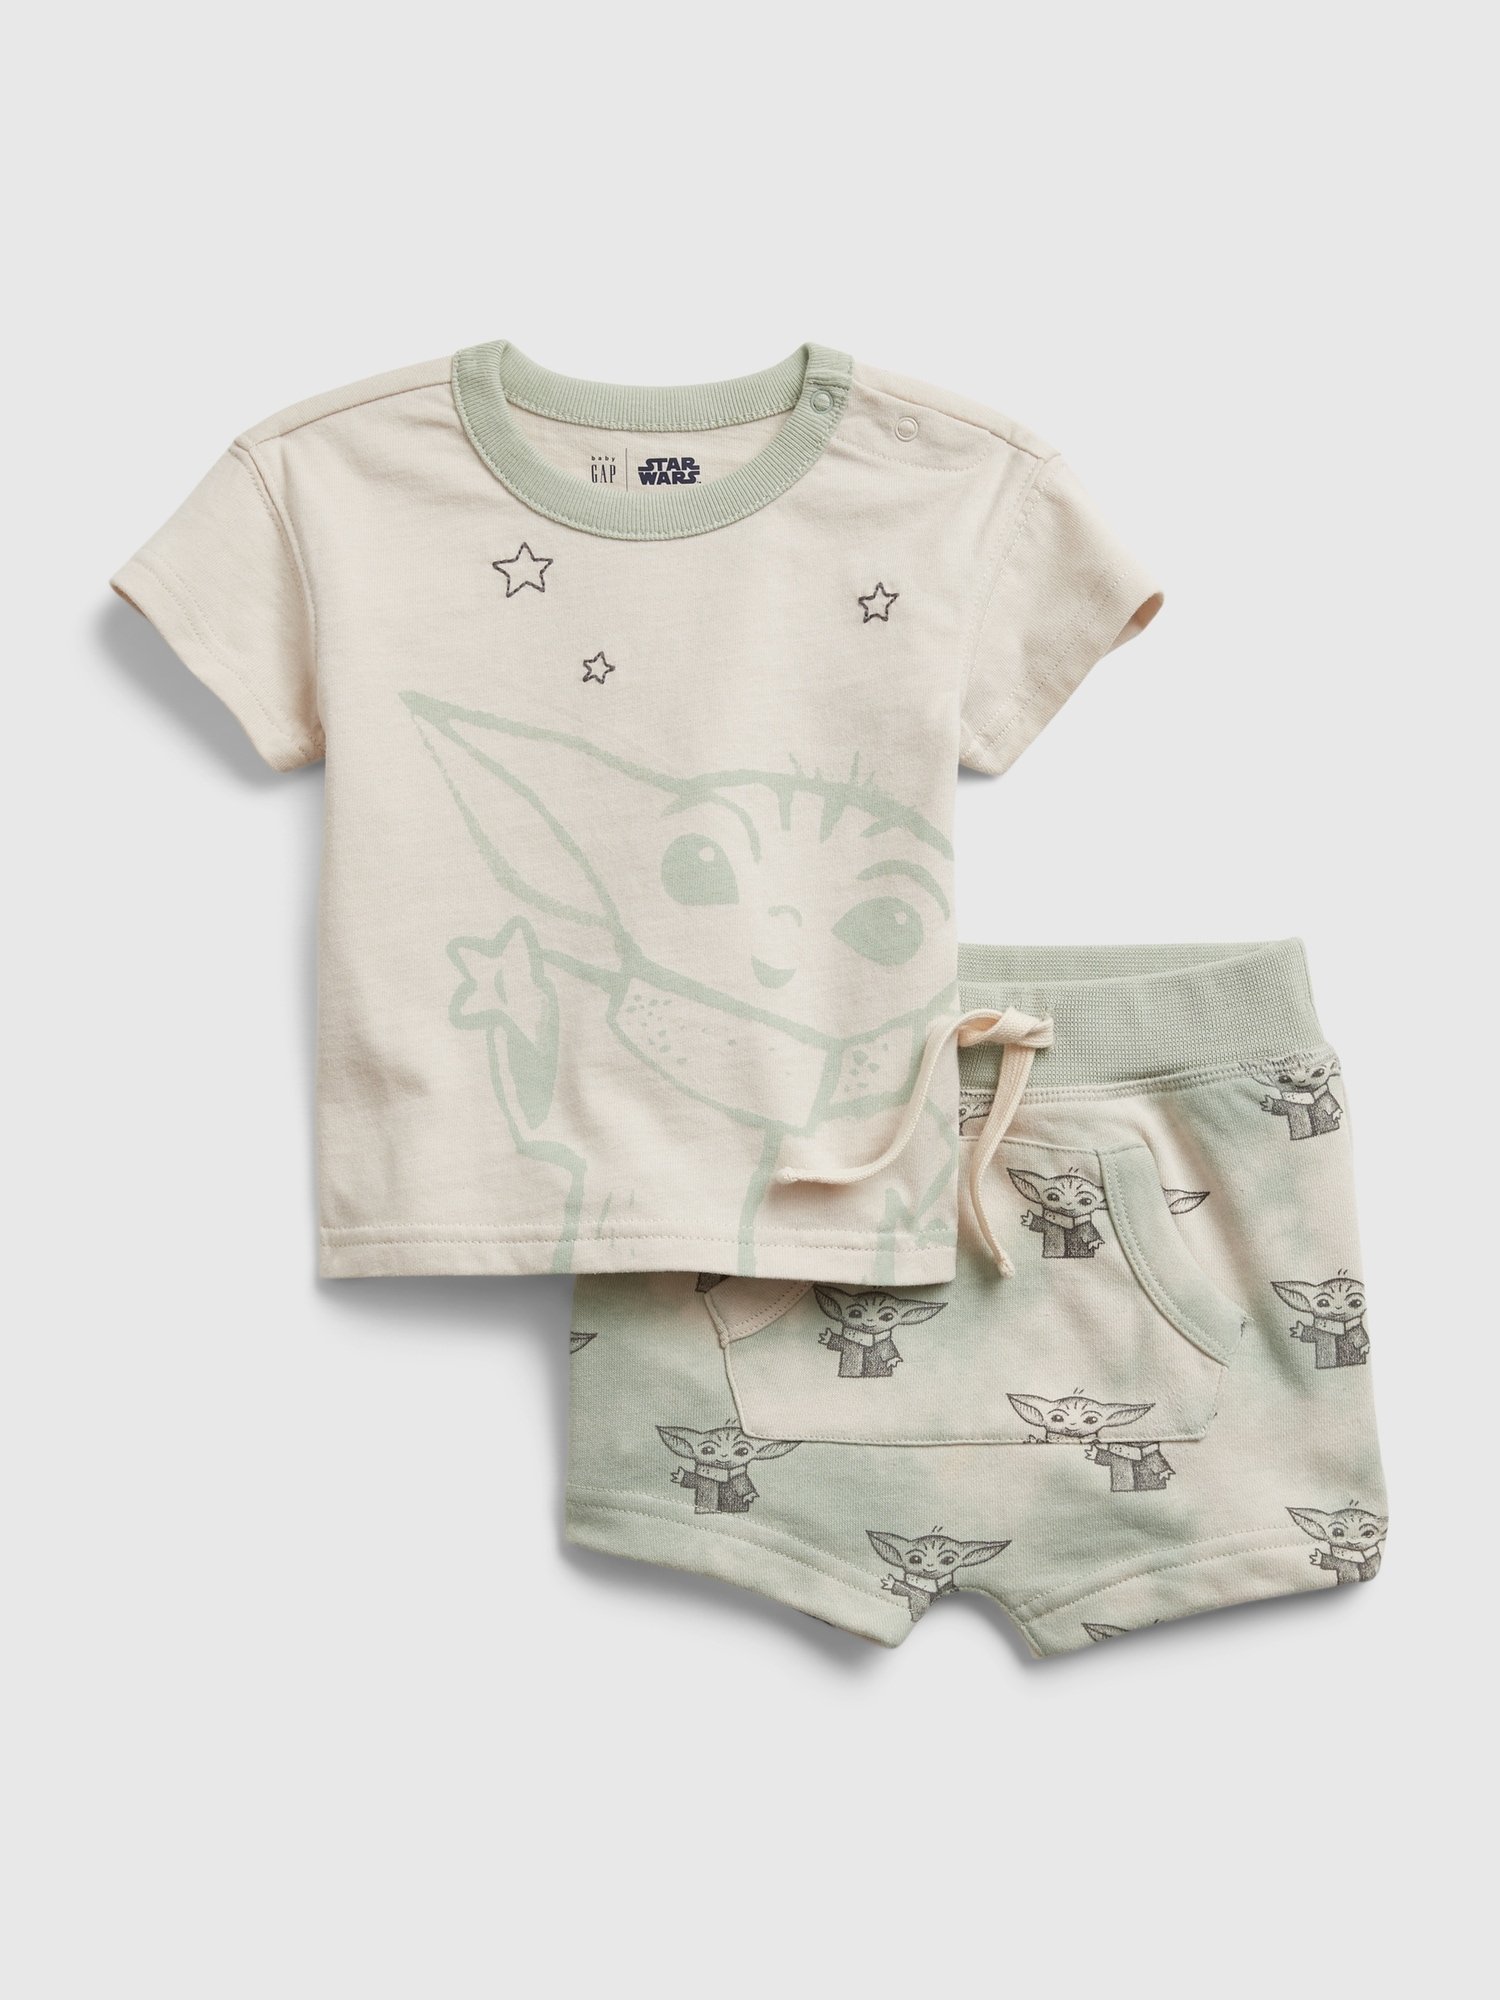 Star Wars™ Desenli Pijama Takımı product image